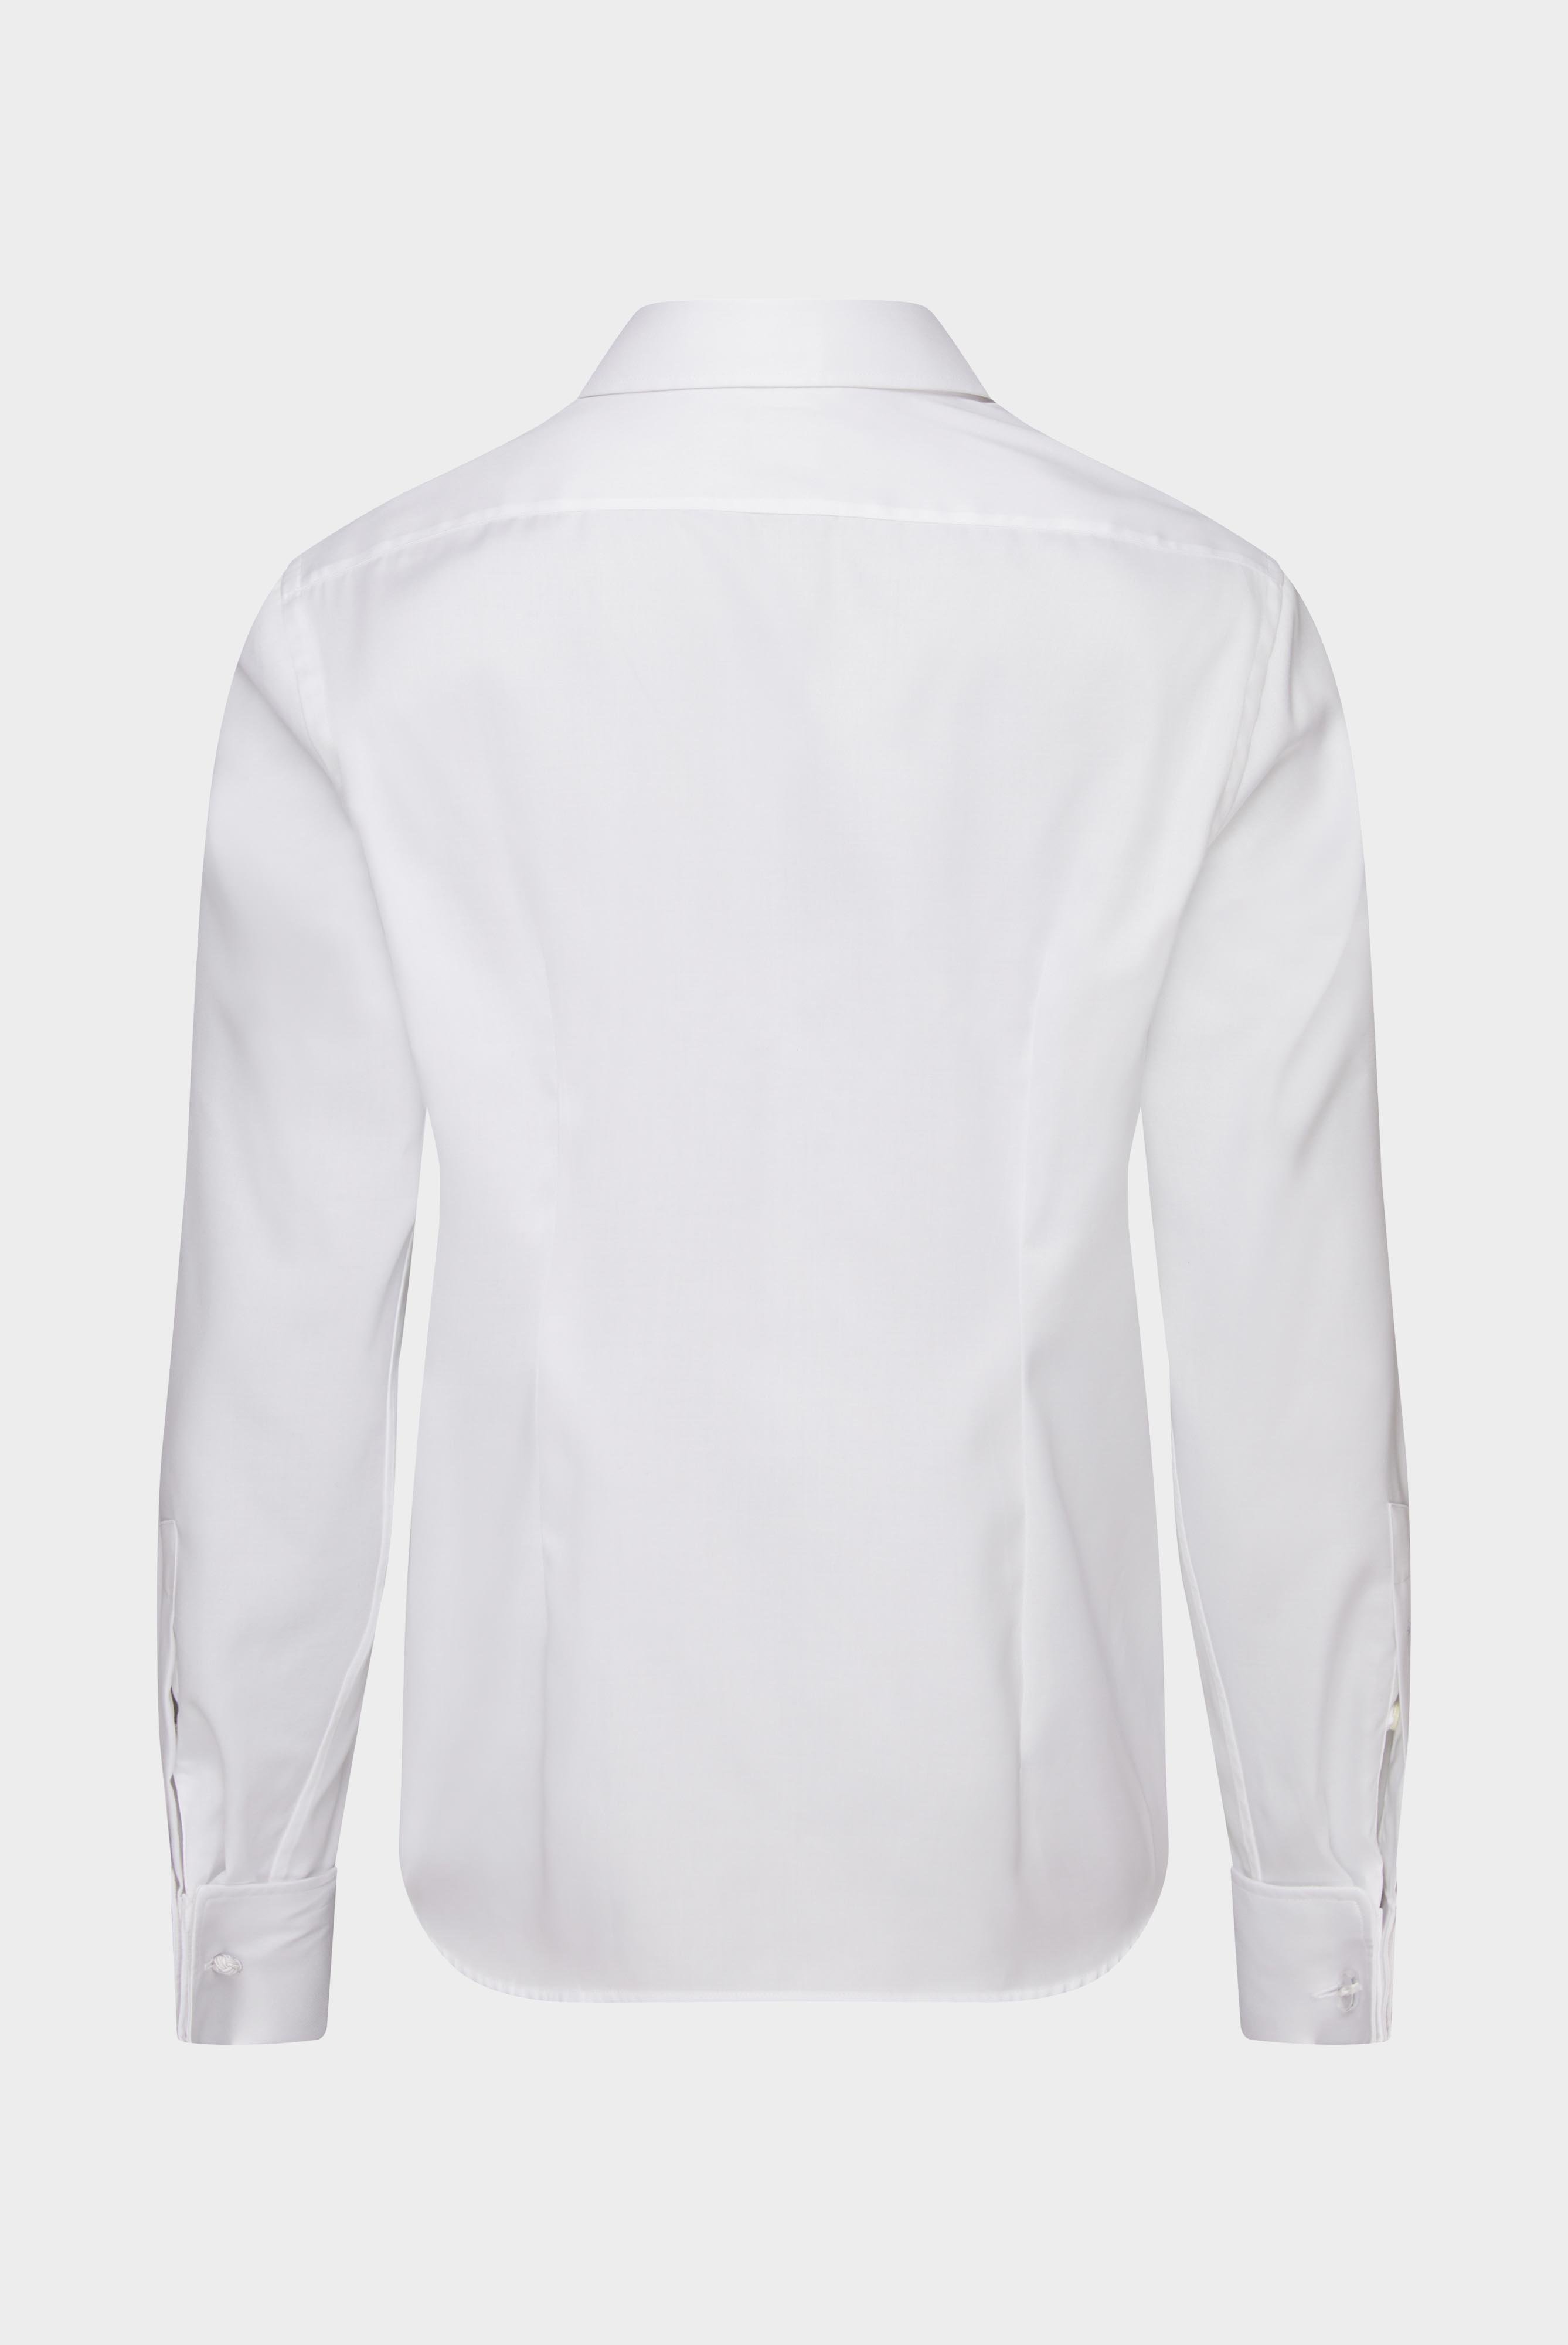 Bügelleichte Hemden+Bügelfreies Twill Hemd Tailor Fit+20.2042.BQ.132241.000.37